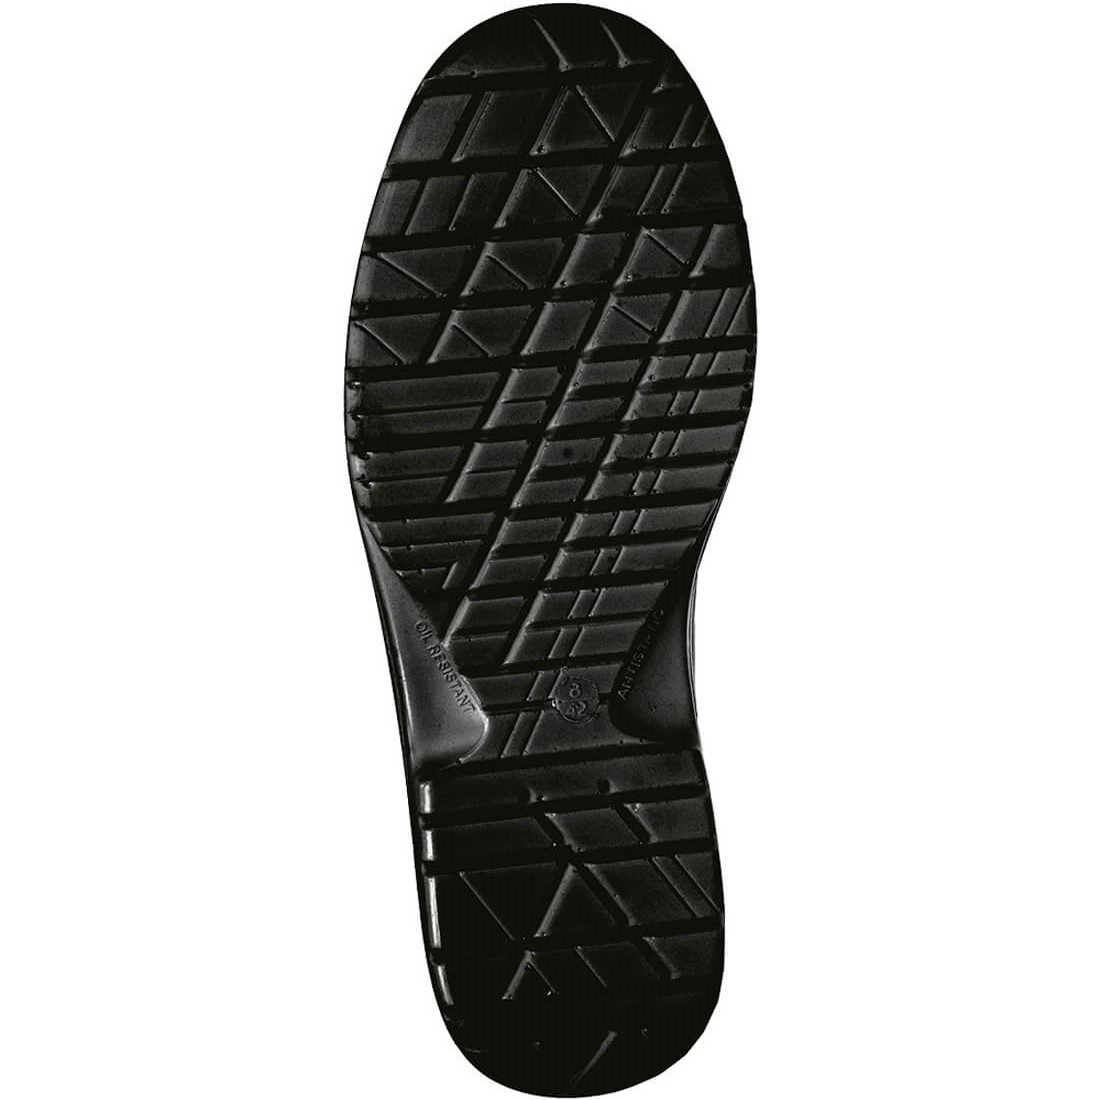 Pantofi cu sireturi Compositelite™ ESD S2 - Incaltaminte de protectie